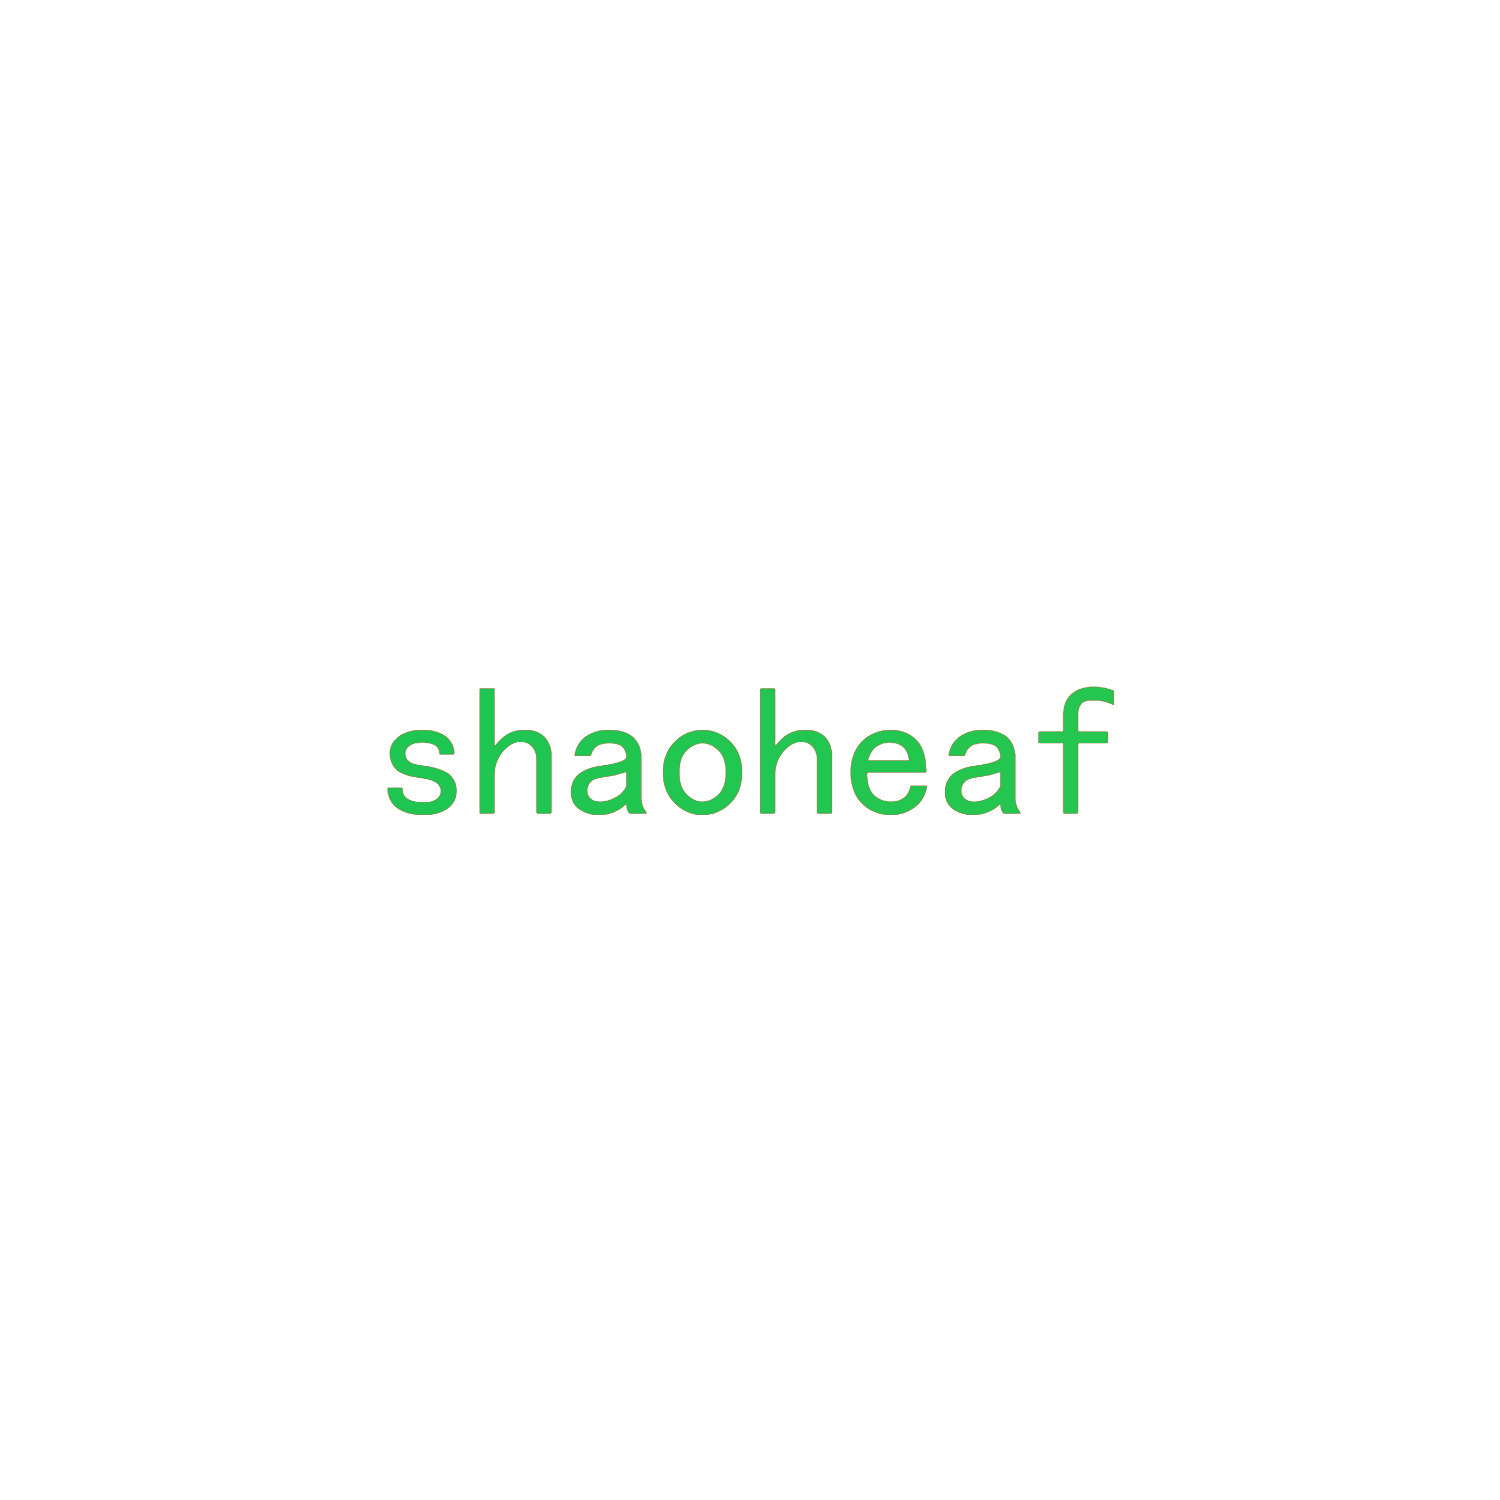 SHAOHEAF